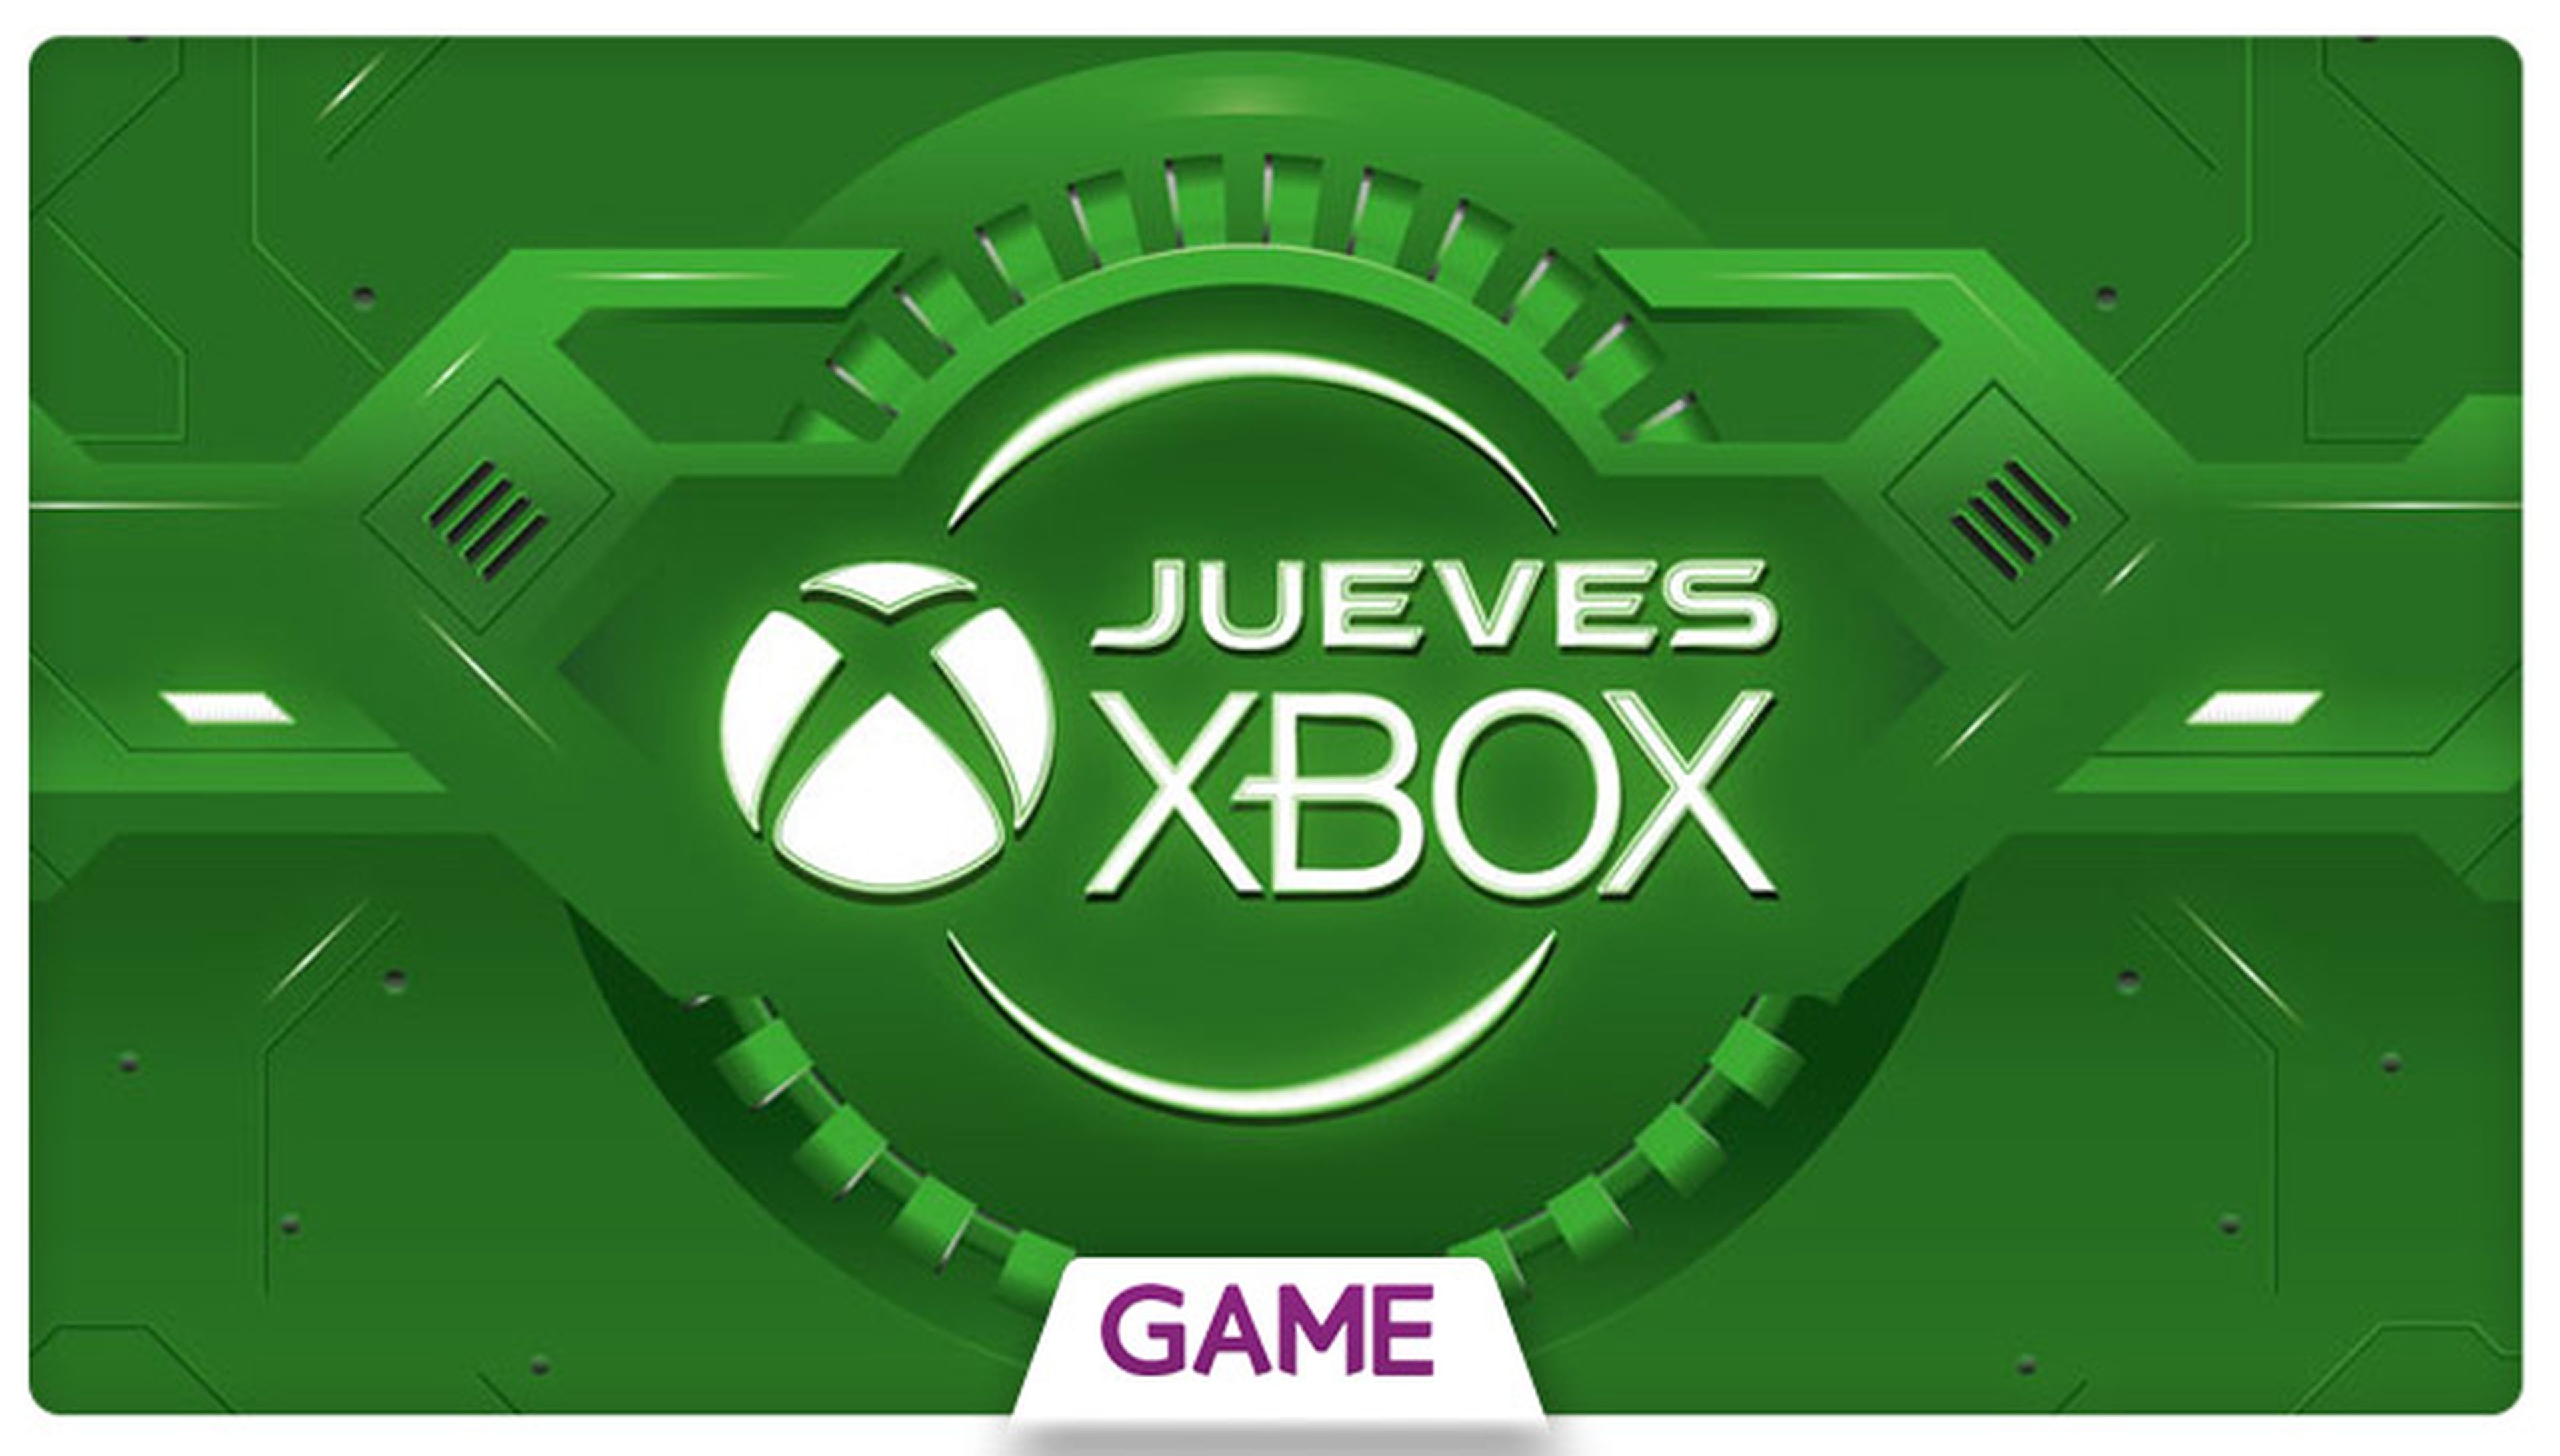 Jueves Xbox en GAME: Ofertas del 06/08/2015